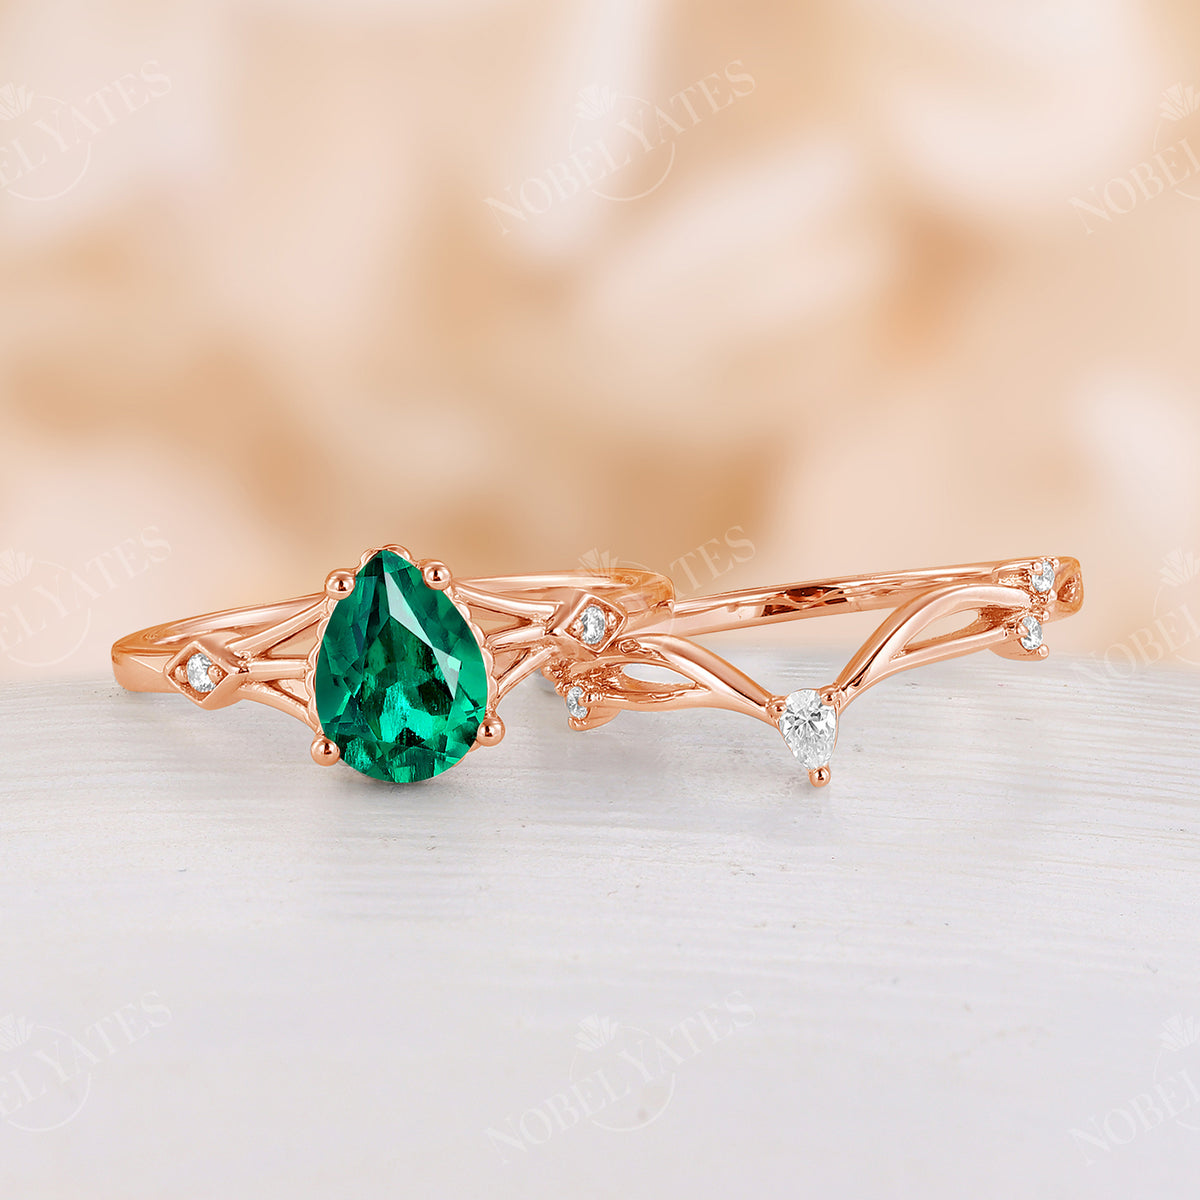 Pear Lab Emerald Vintage Engagement Ring Set Split Band Rose Gold